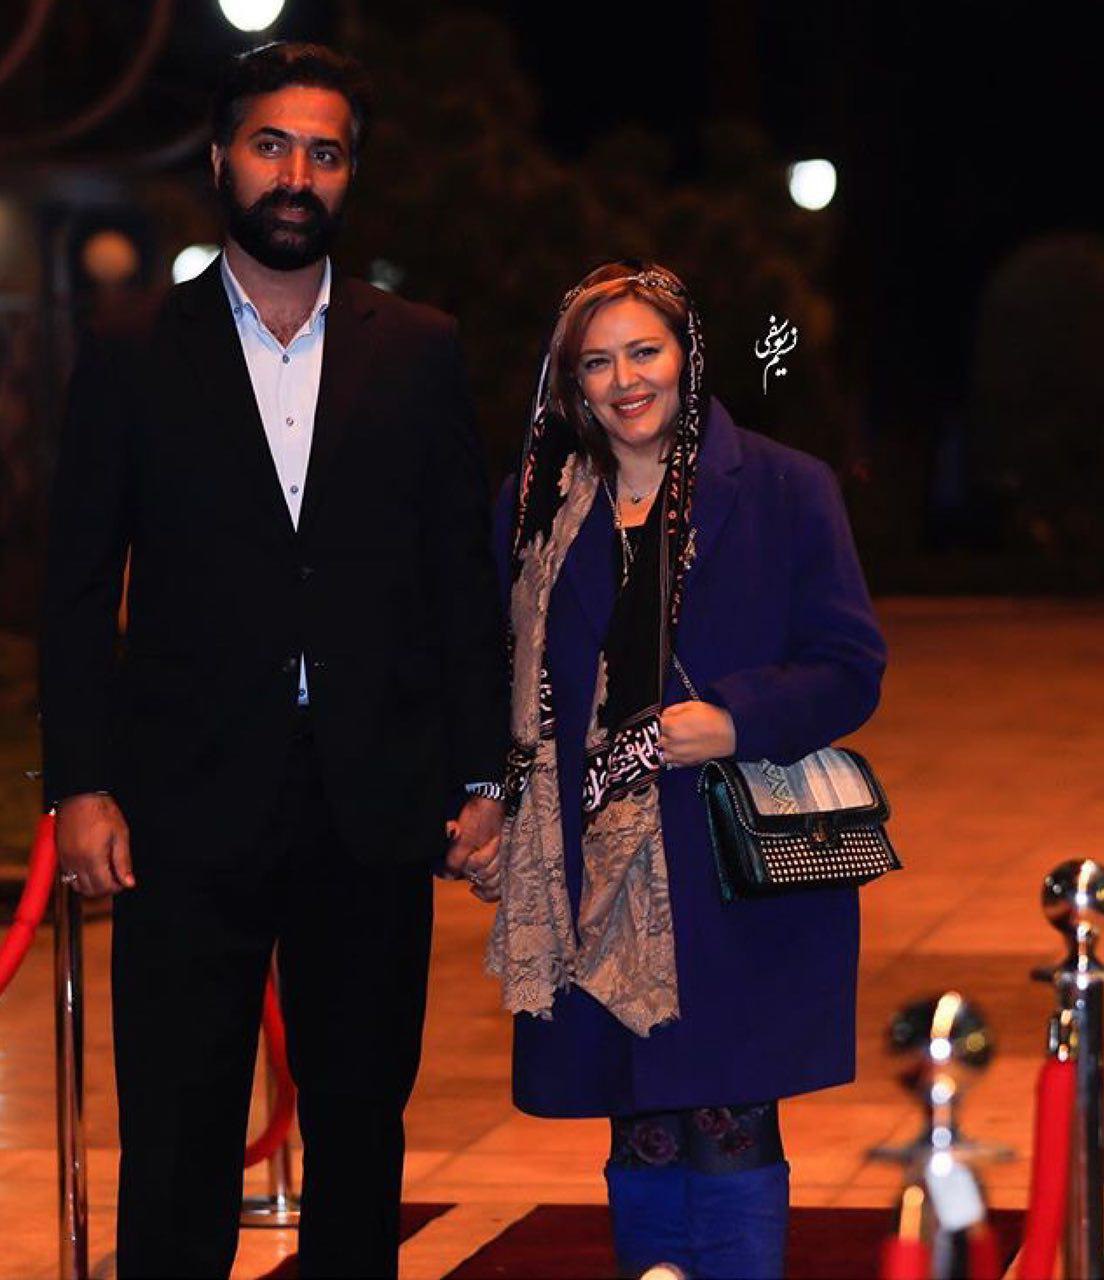 بهاره رهنما و همسرش دیشب در یک جشن (عکس)